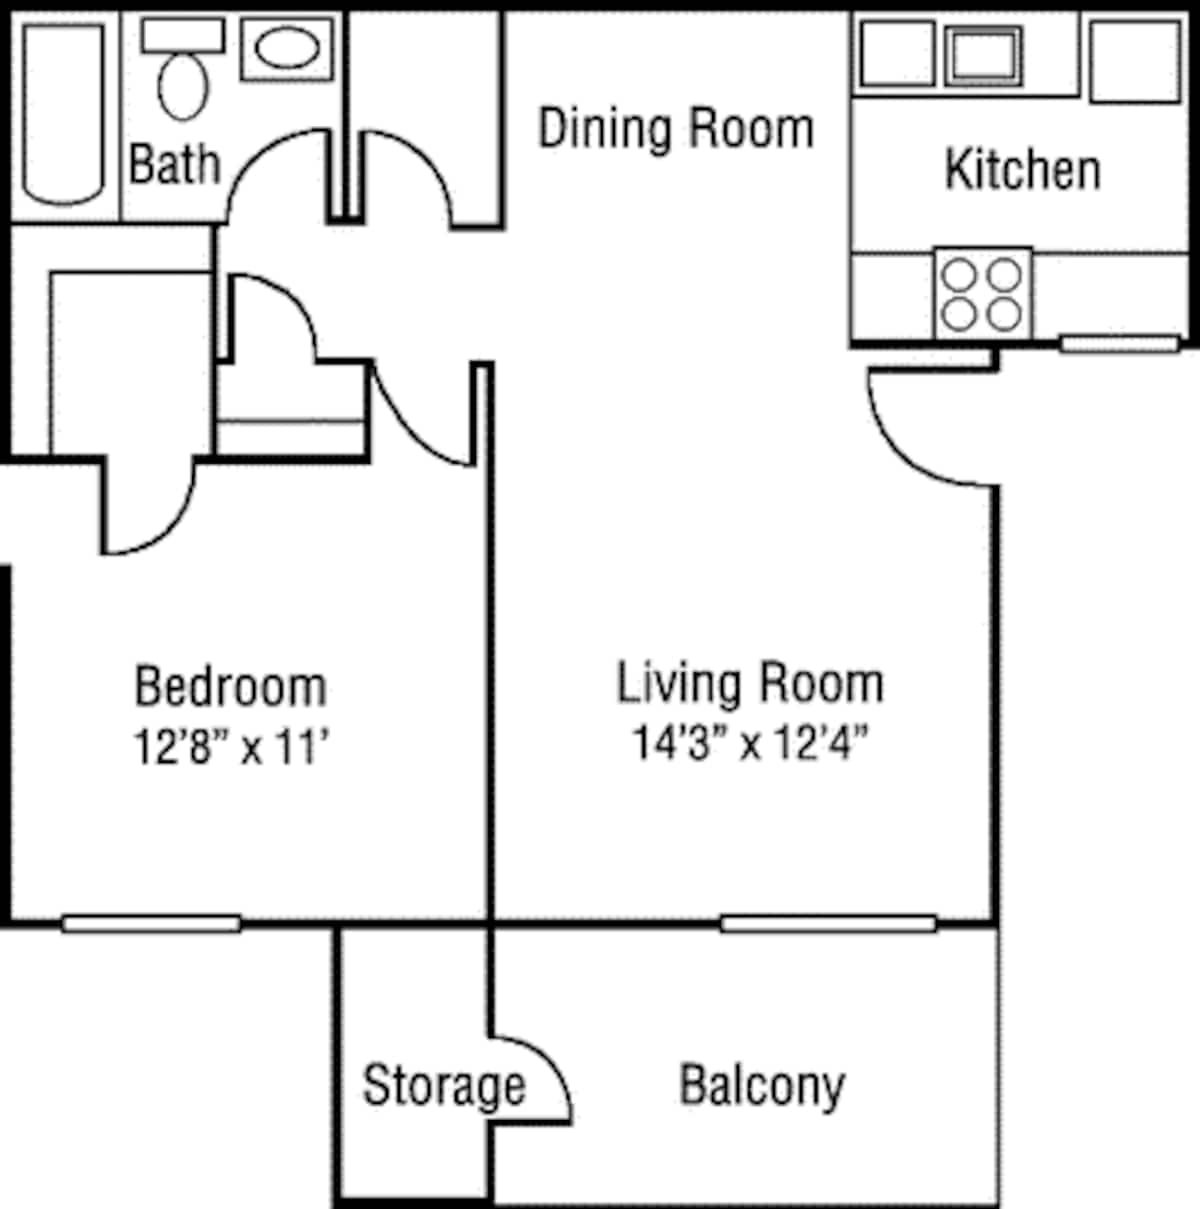 Floorplan diagram for The Monterey, showing 1 bedroom